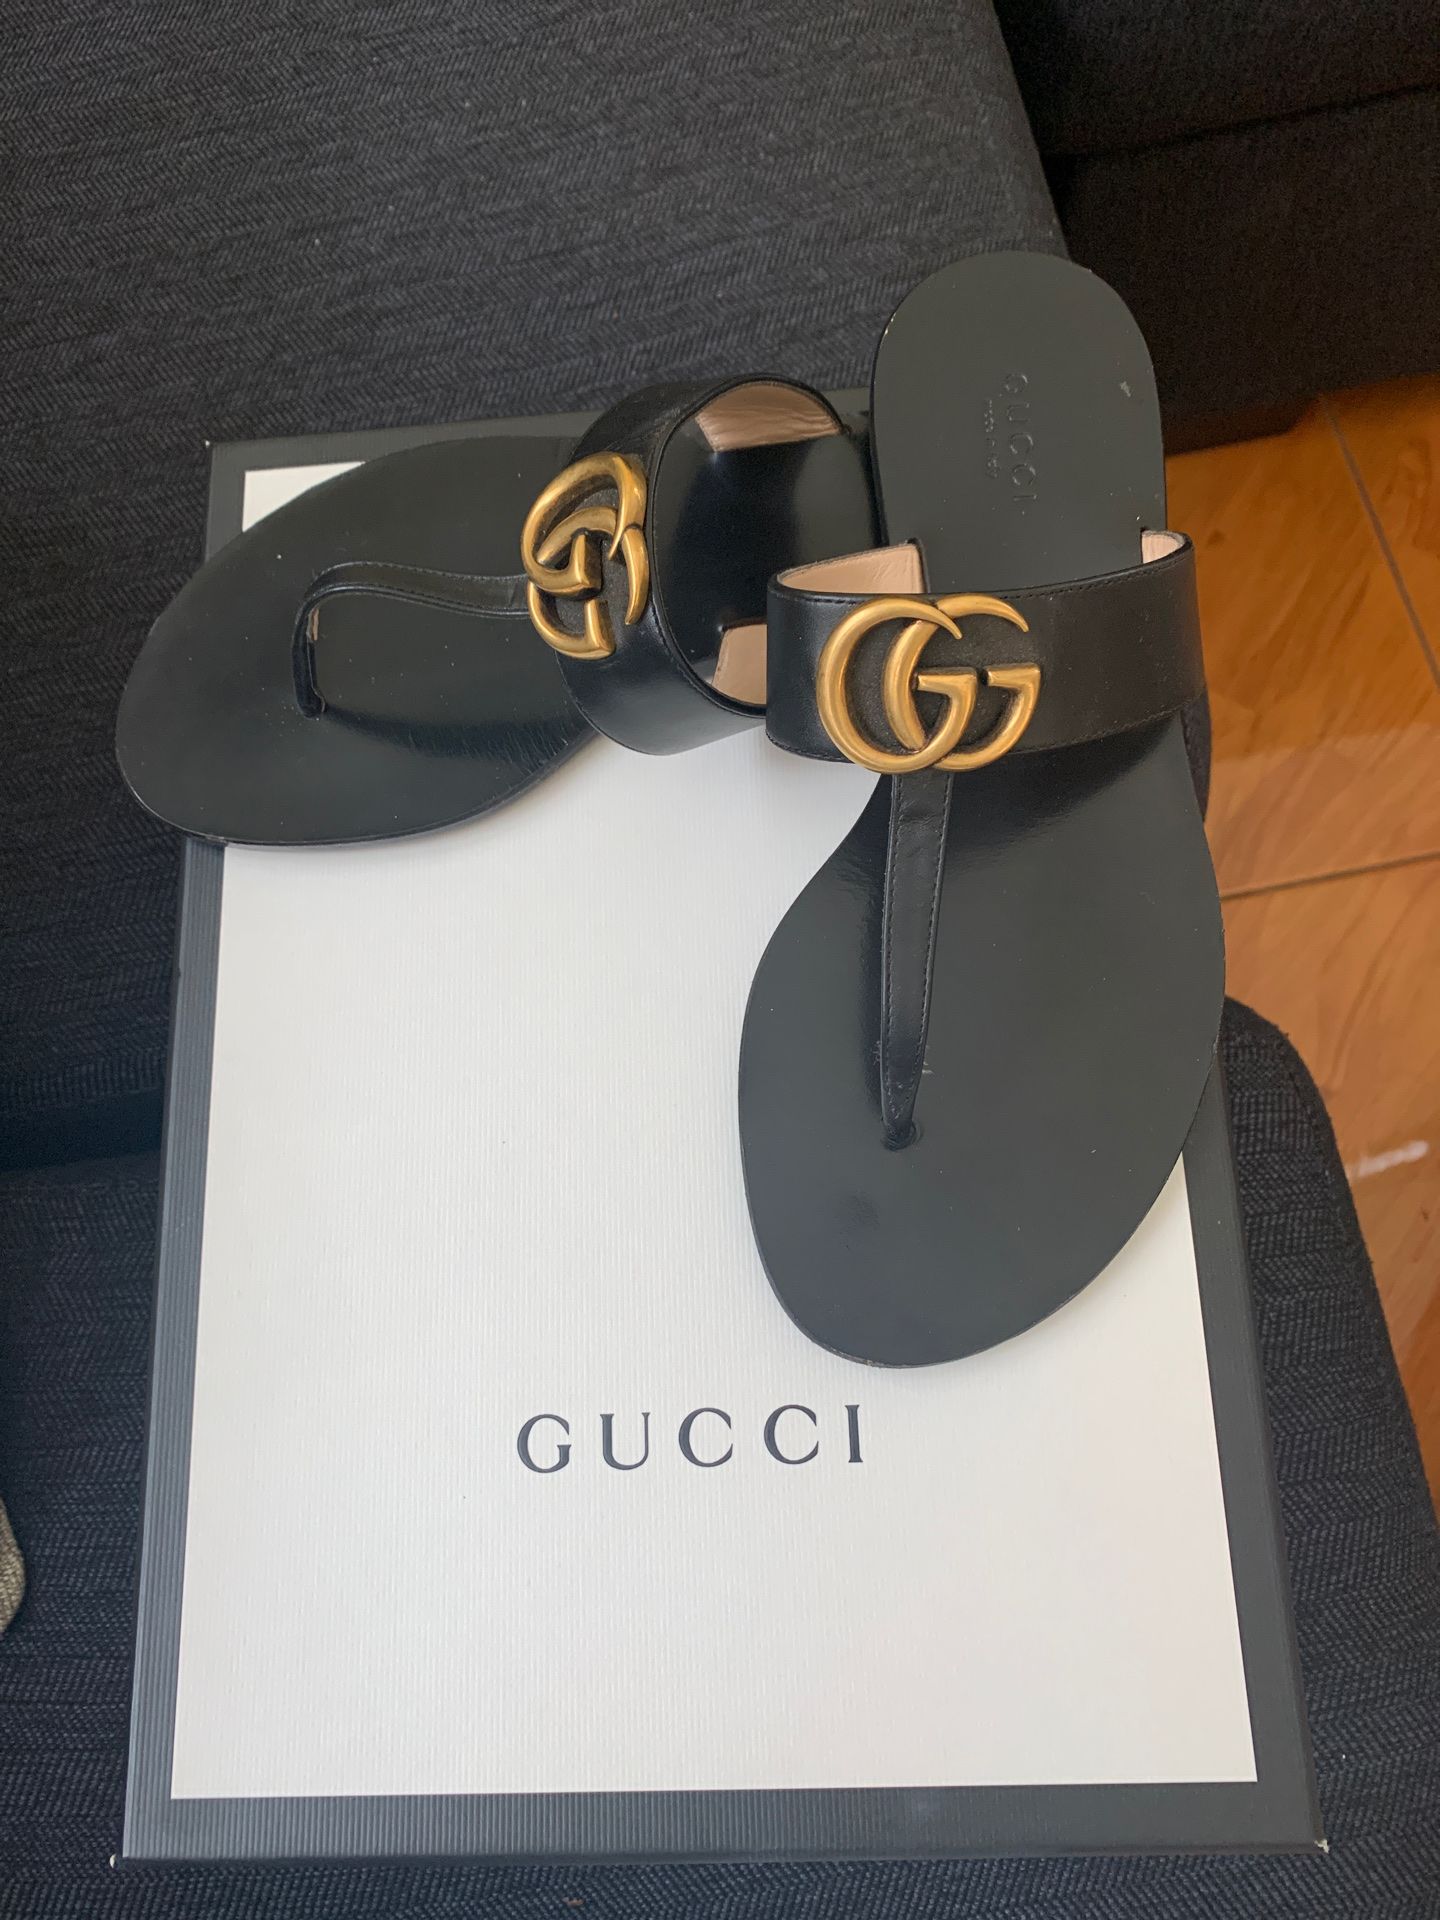 Gucci sandals worn